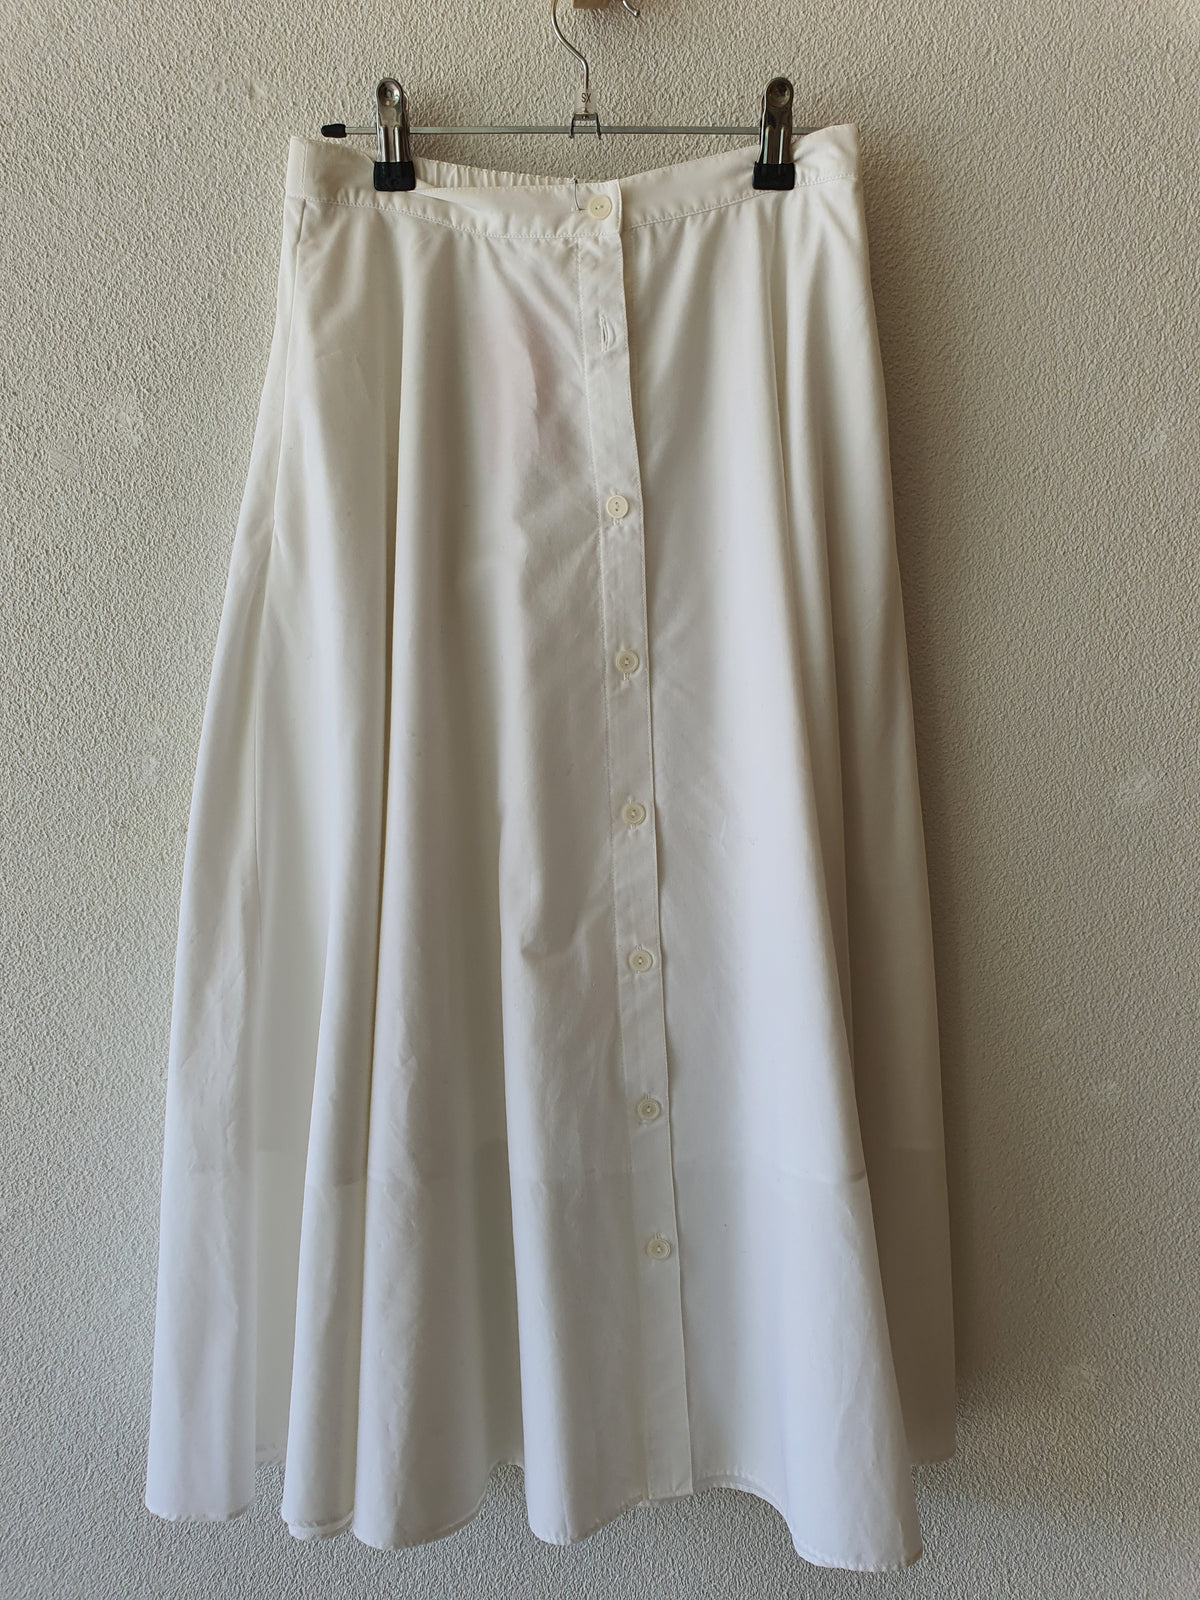 Uniqlo cotton polyester white button skirt 8